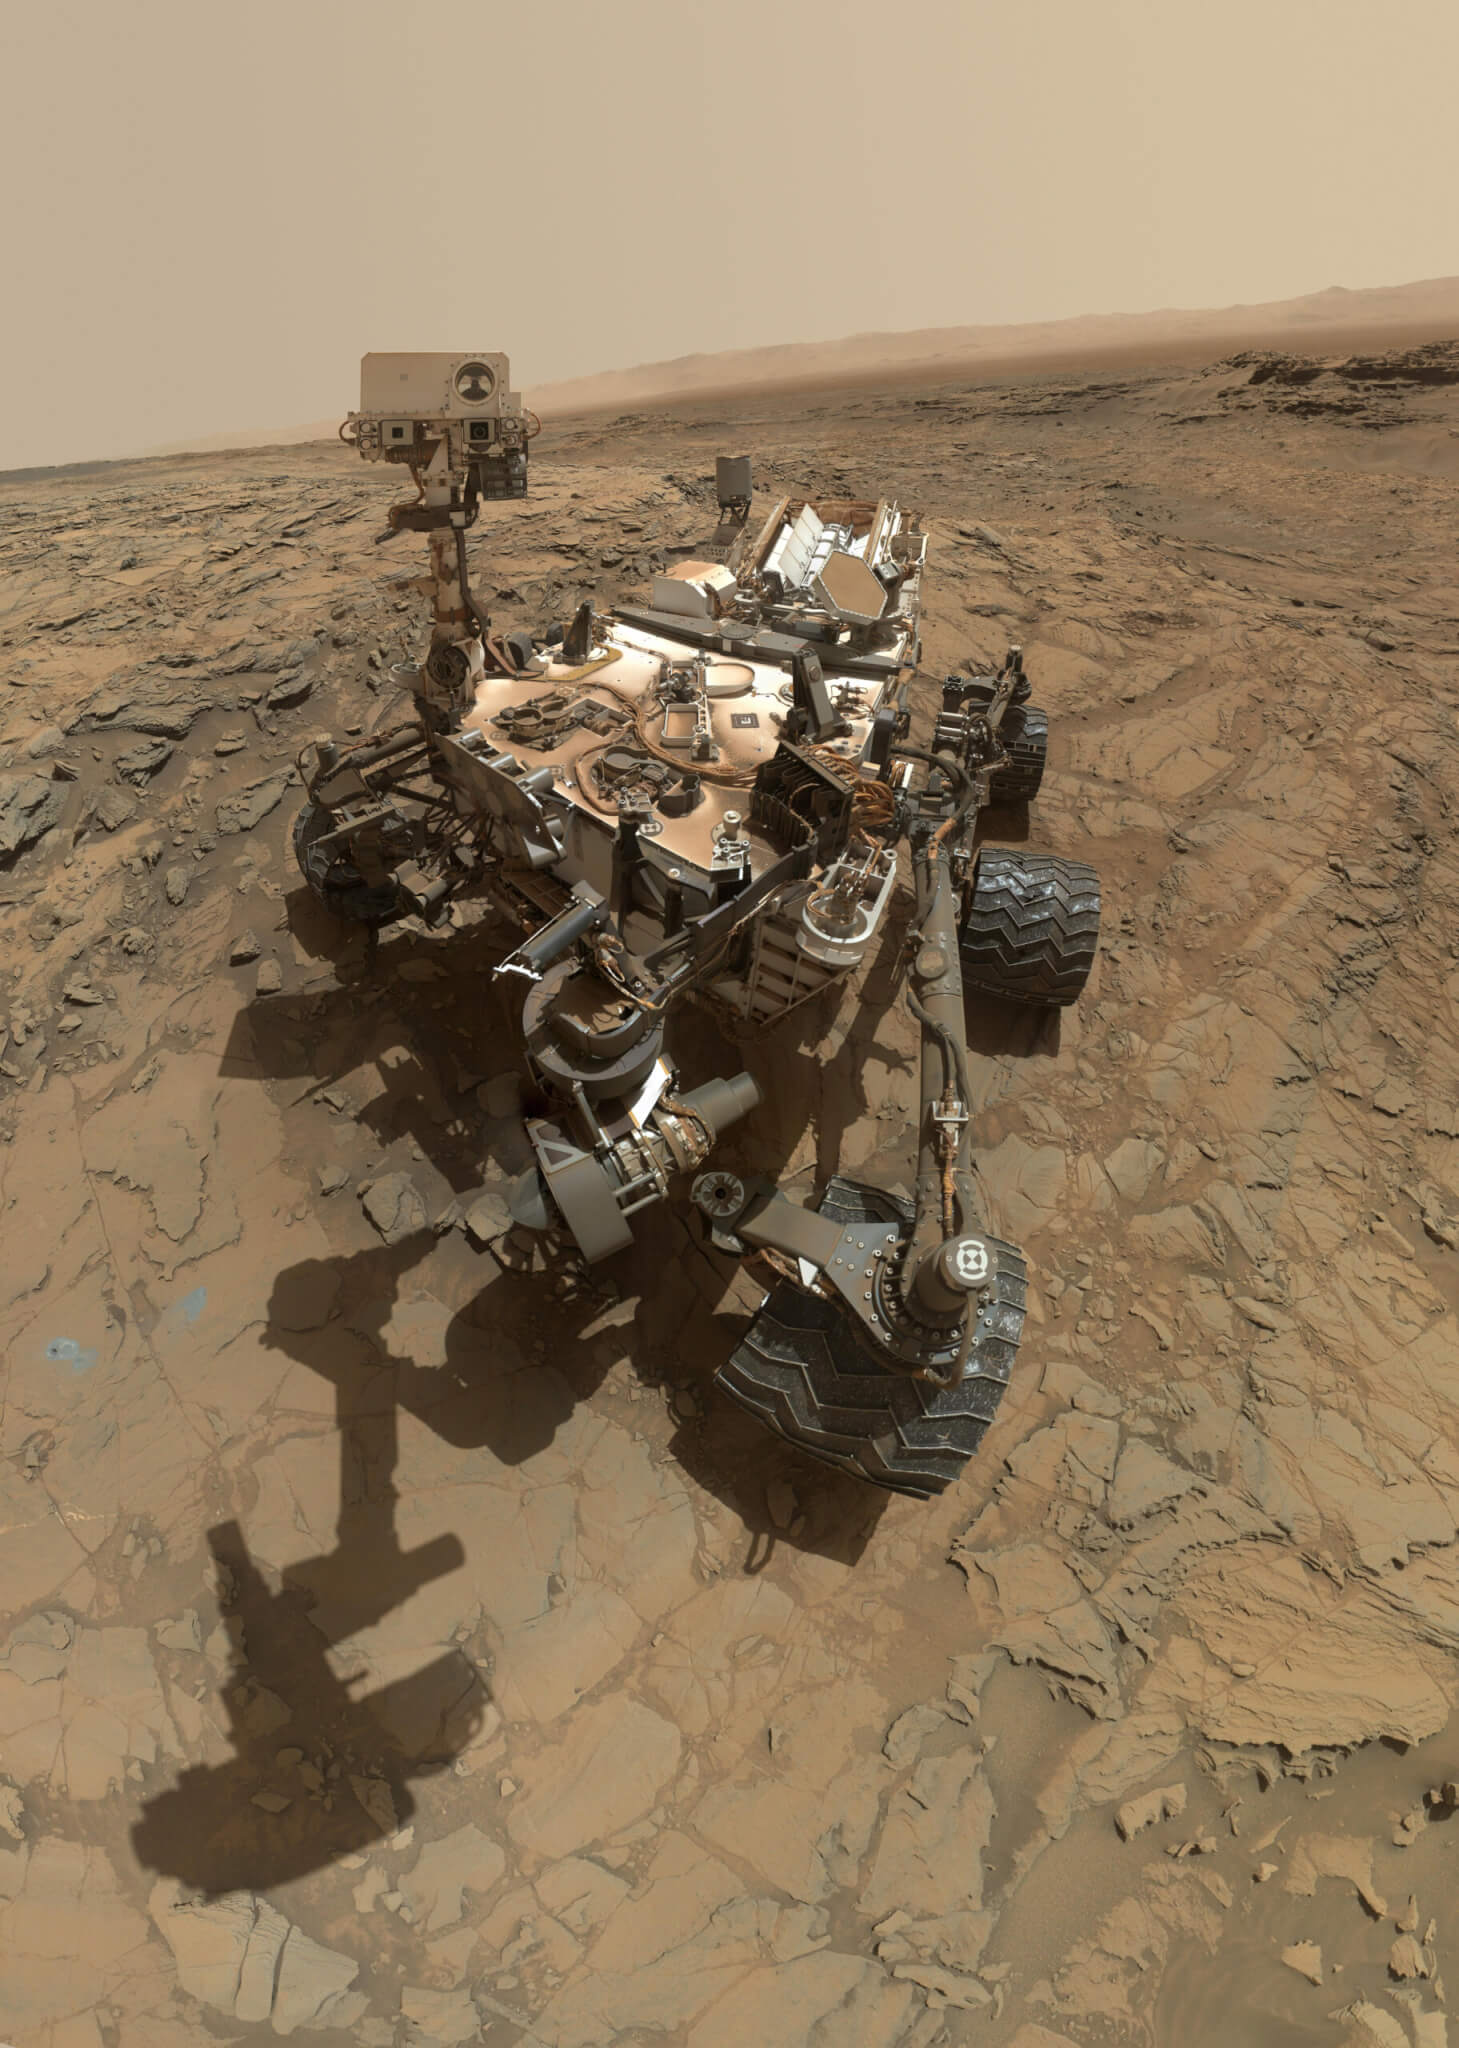 NASA Curiosity rover